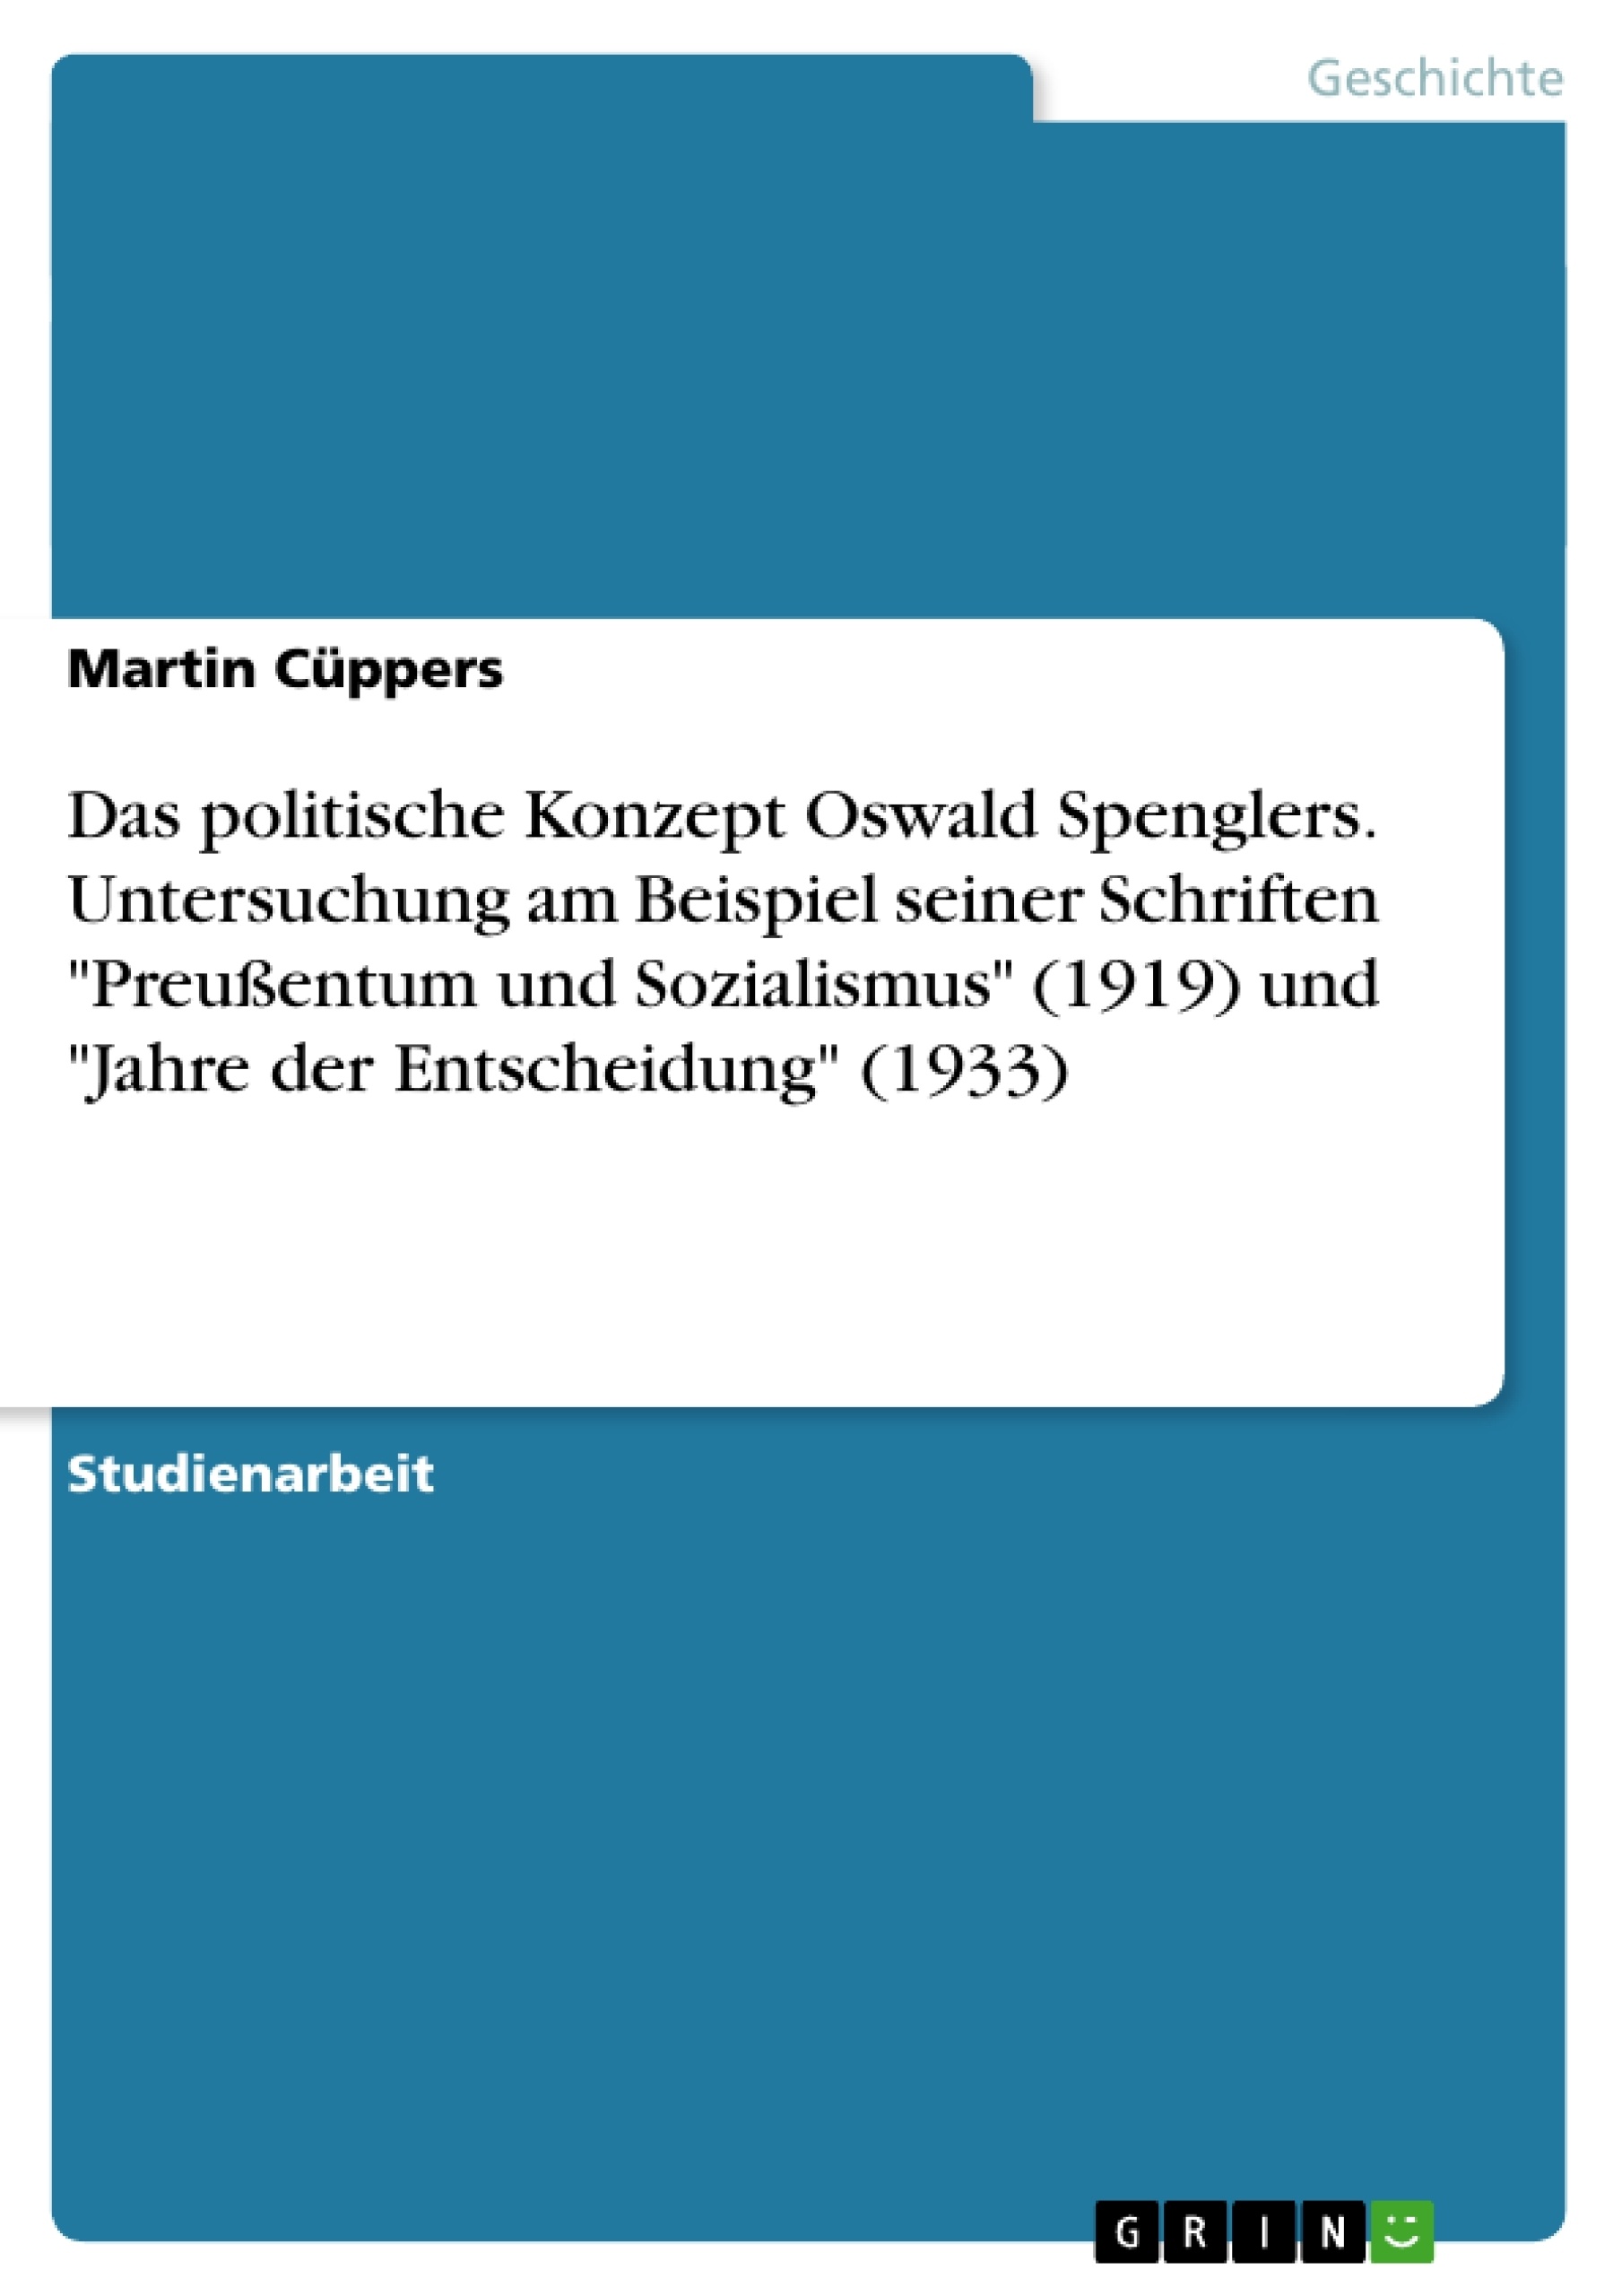 Titel: Das politische Konzept Oswald Spenglers. Untersuchung am Beispiel seiner Schriften "Preußentum und Sozialismus" (1919) und "Jahre der Entscheidung" (1933)